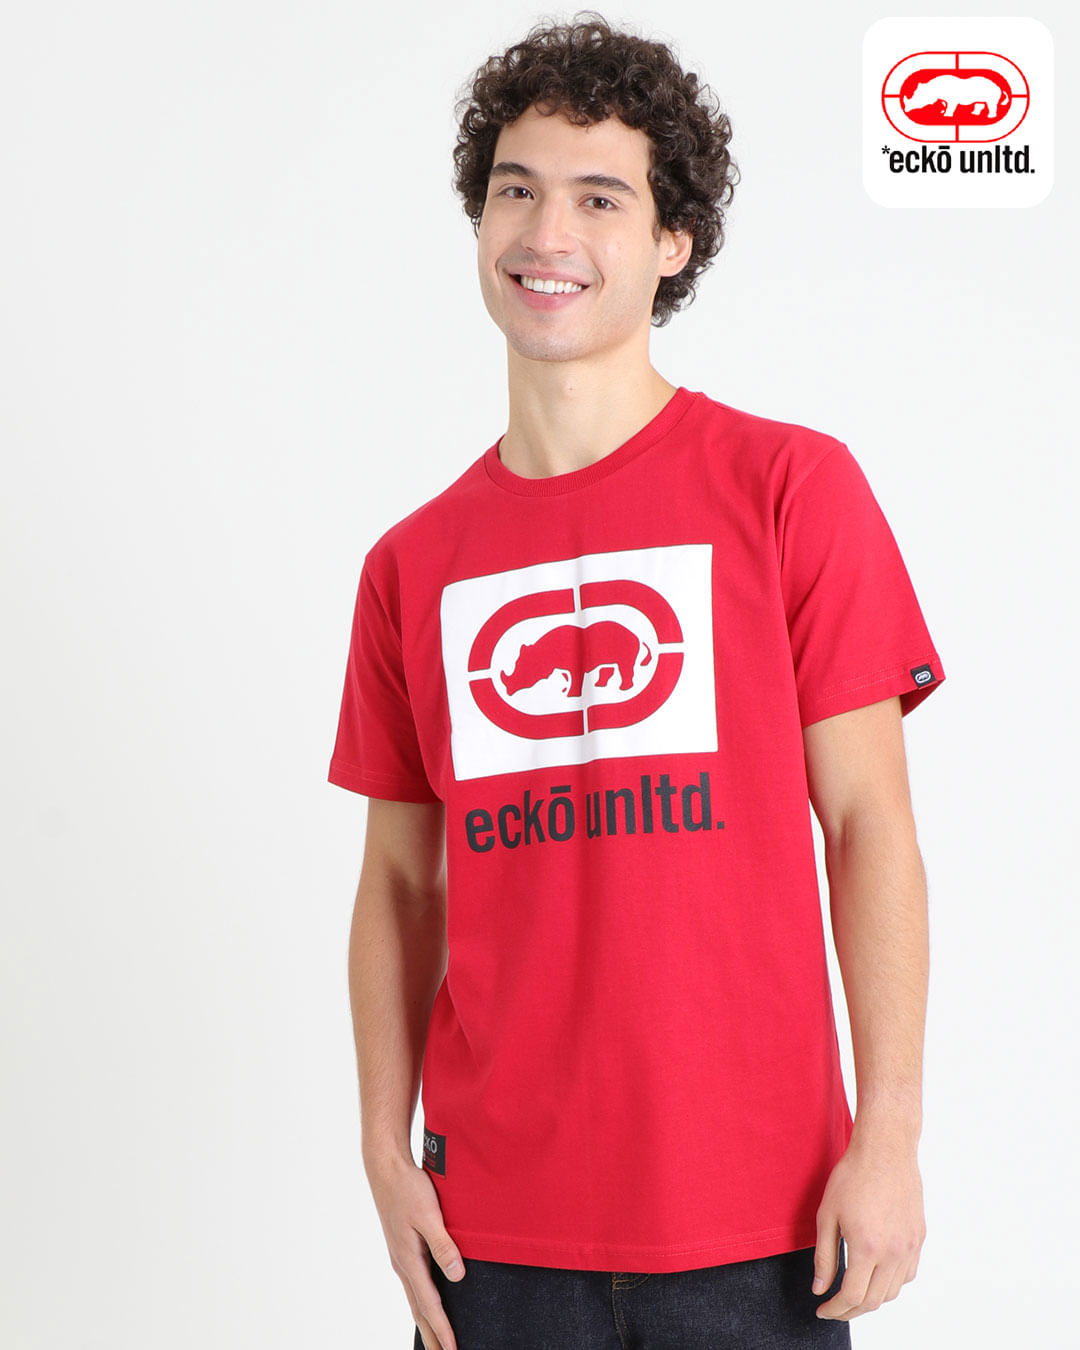 Camiseta-manga-curta-estampa-Ecko-Unlimited-vermelha